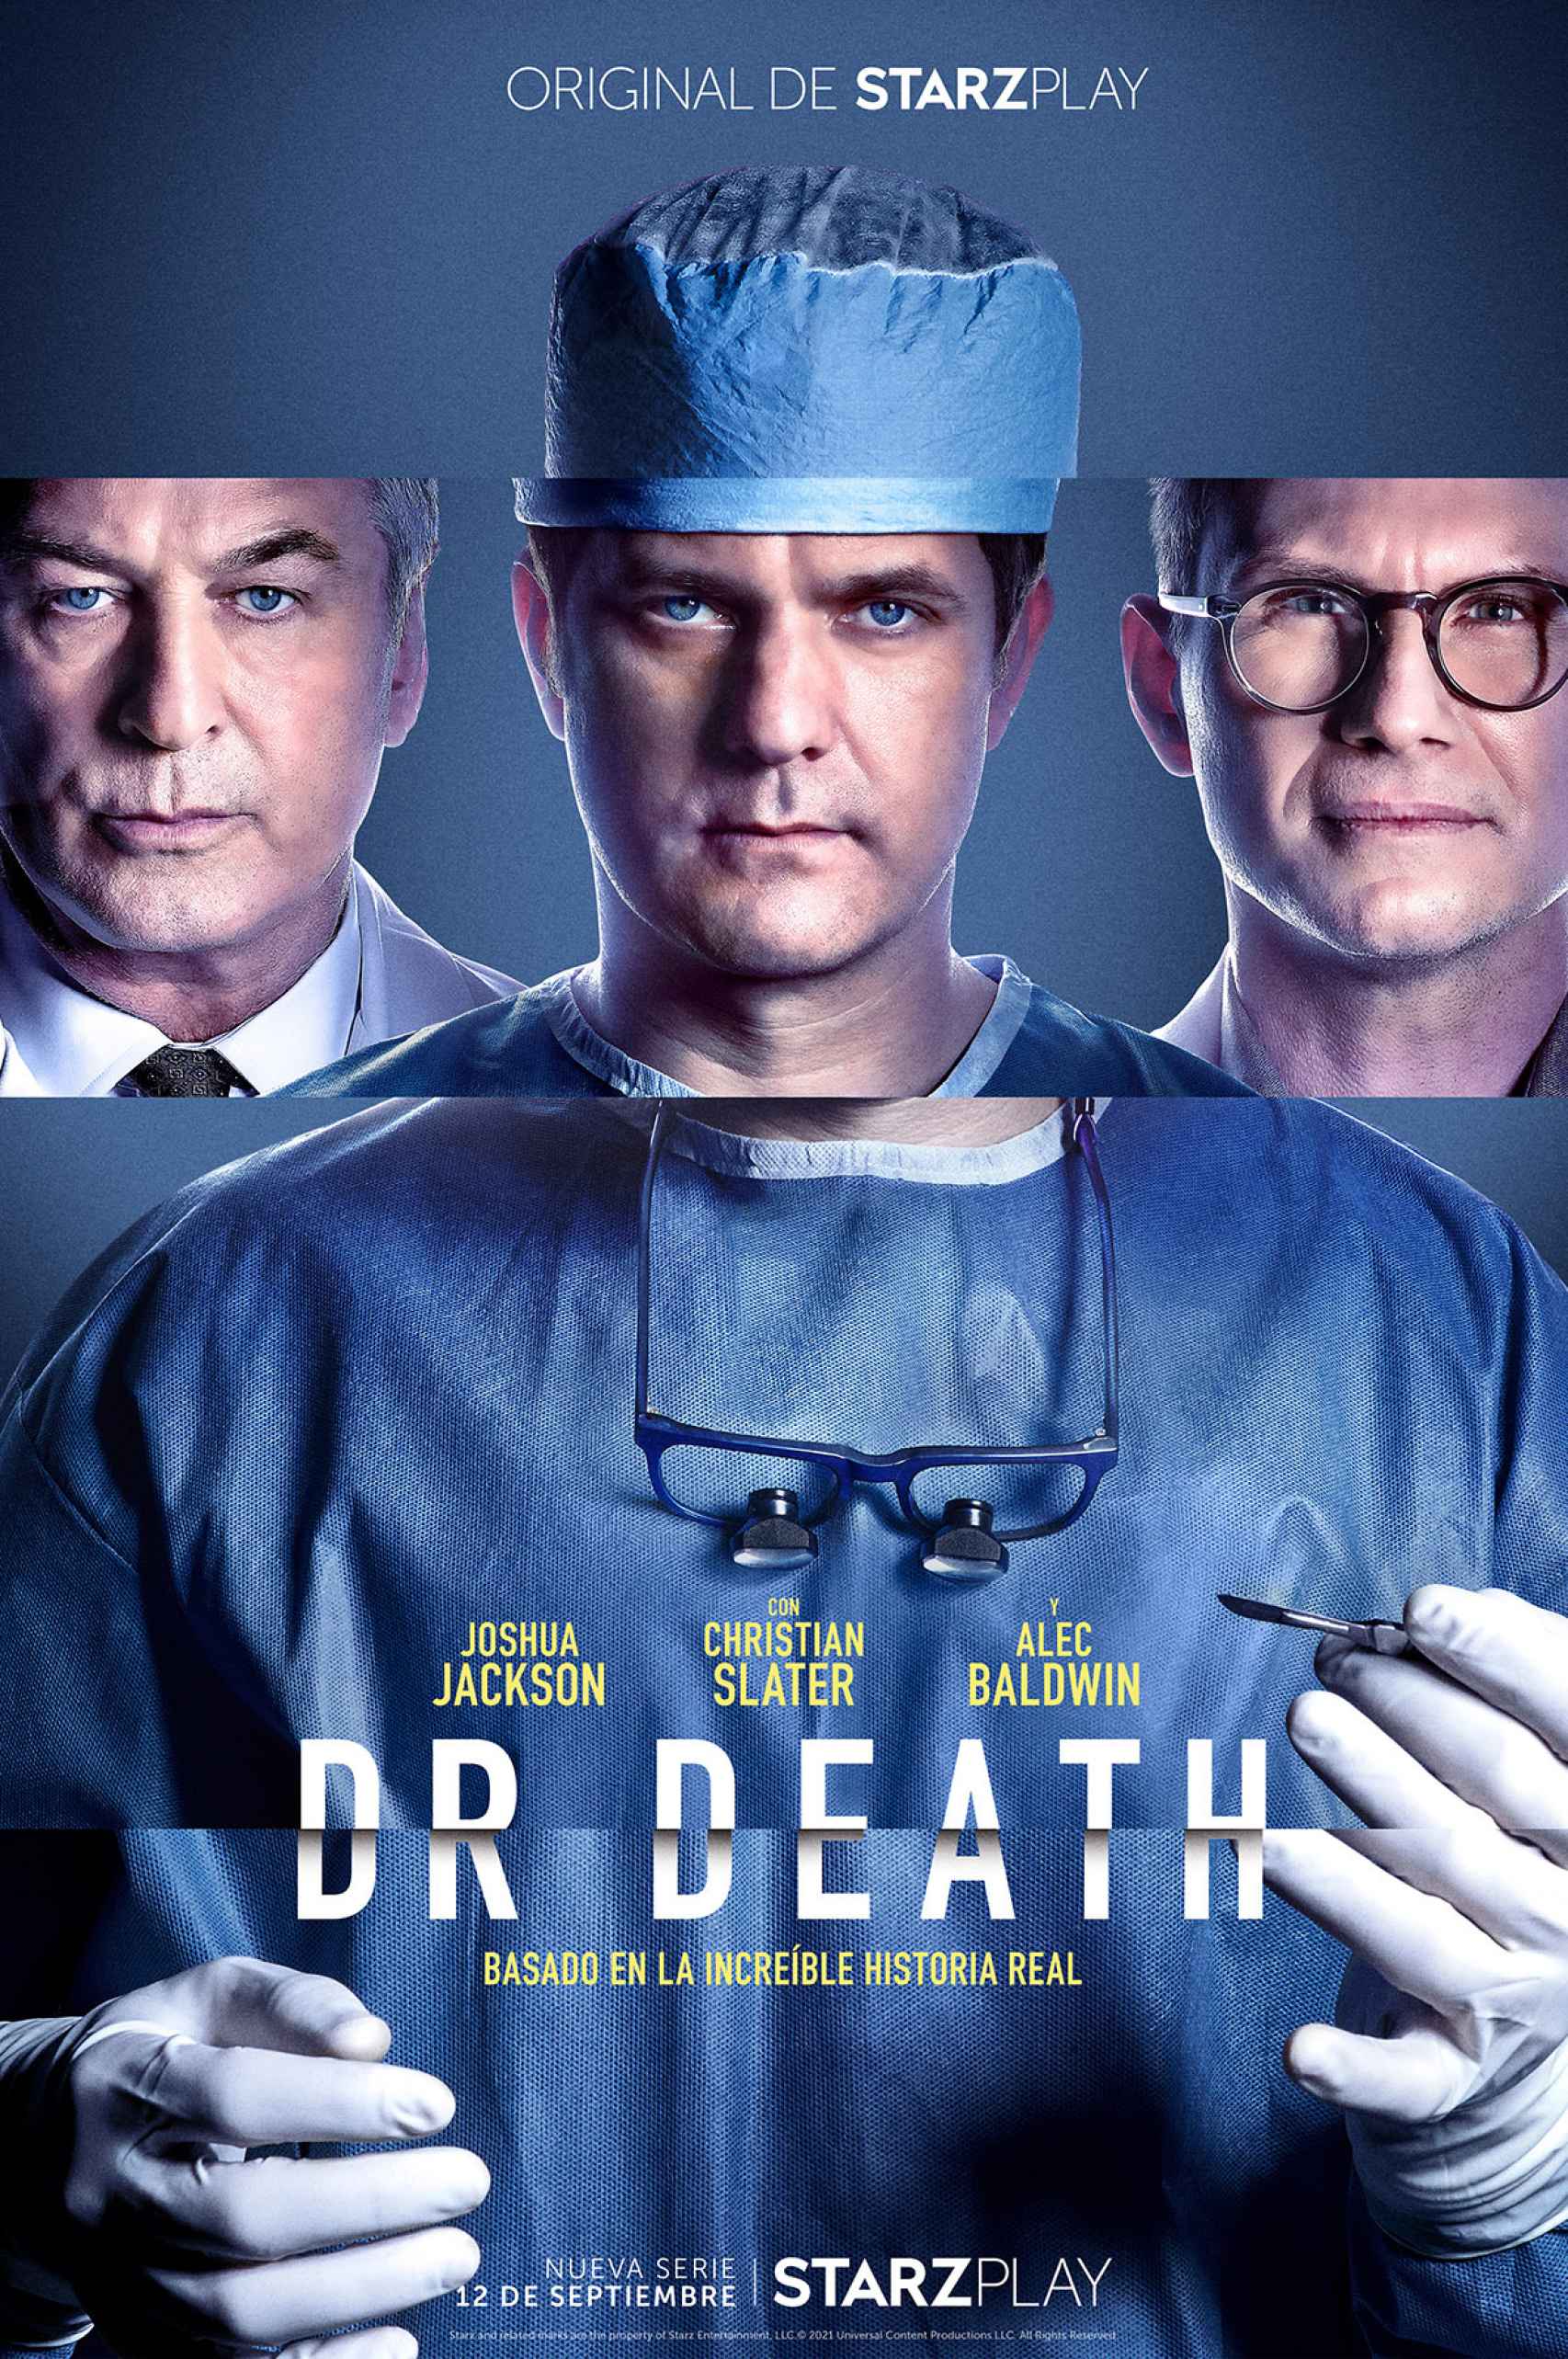 Cartel de 'Dr. Death', la miniserie basada en hechos reales que estrena Starzplay.